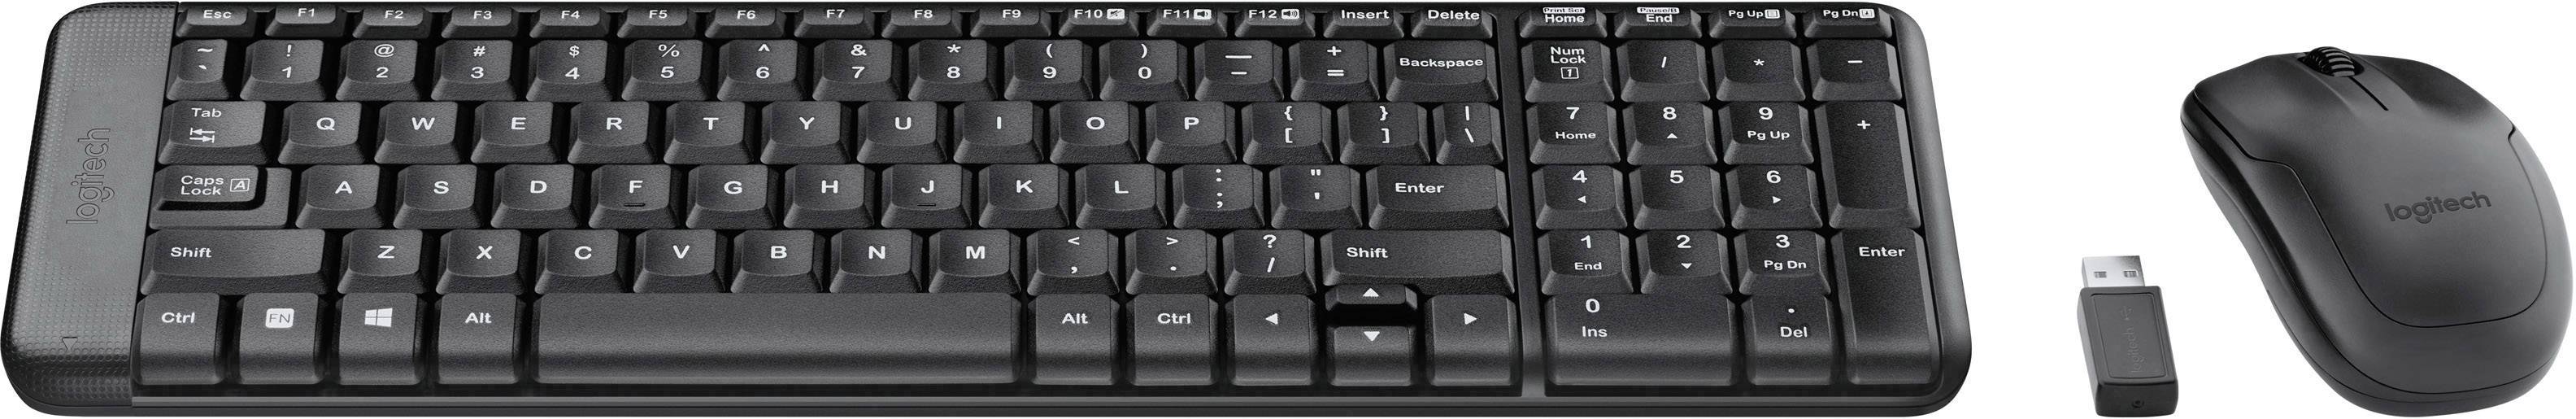 LOGITECH Keyboard/MK220 Wireless Desktop+mouse